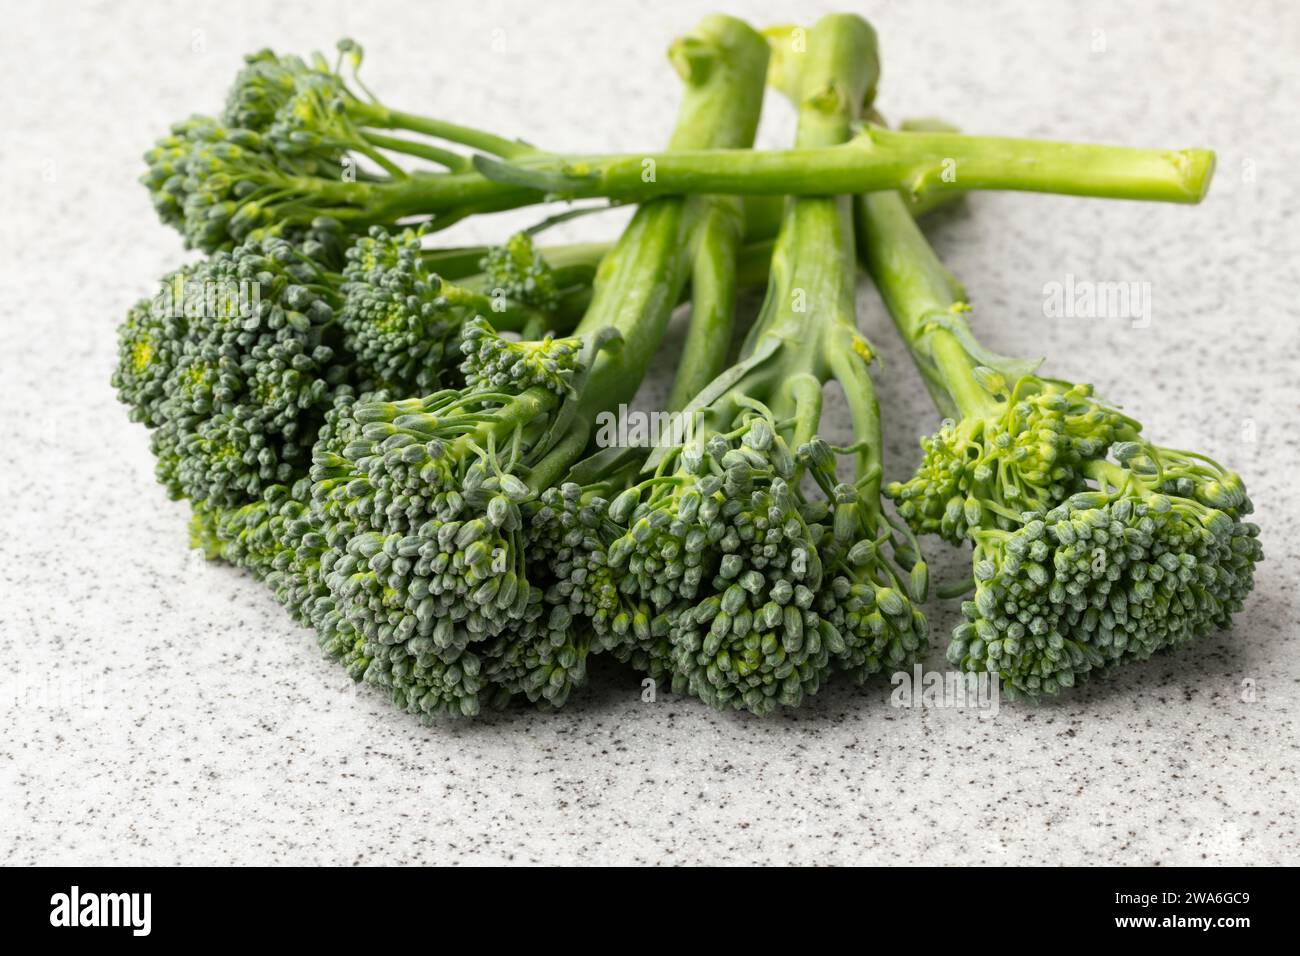 Bimi vert cru frais, broccolini, légumes en gros plan Banque D'Images